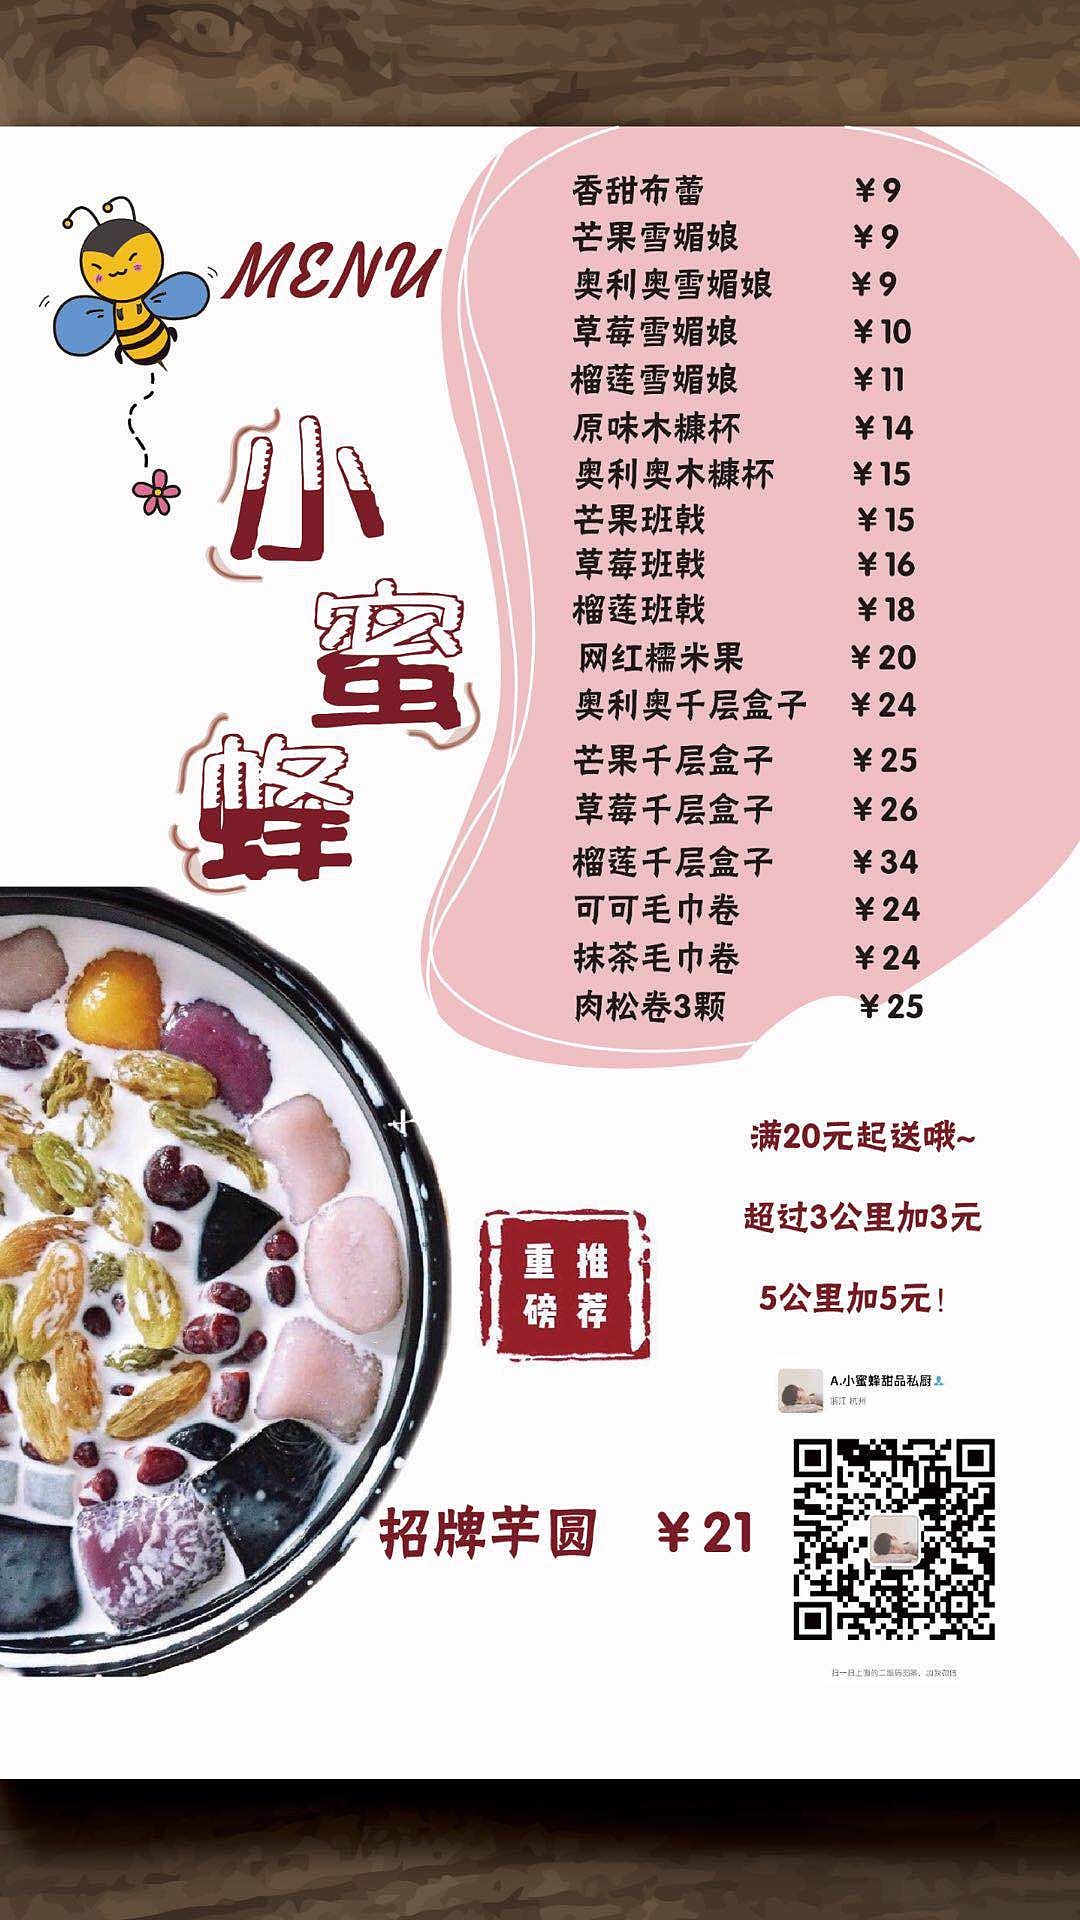 广州百花甜品店菜单图片